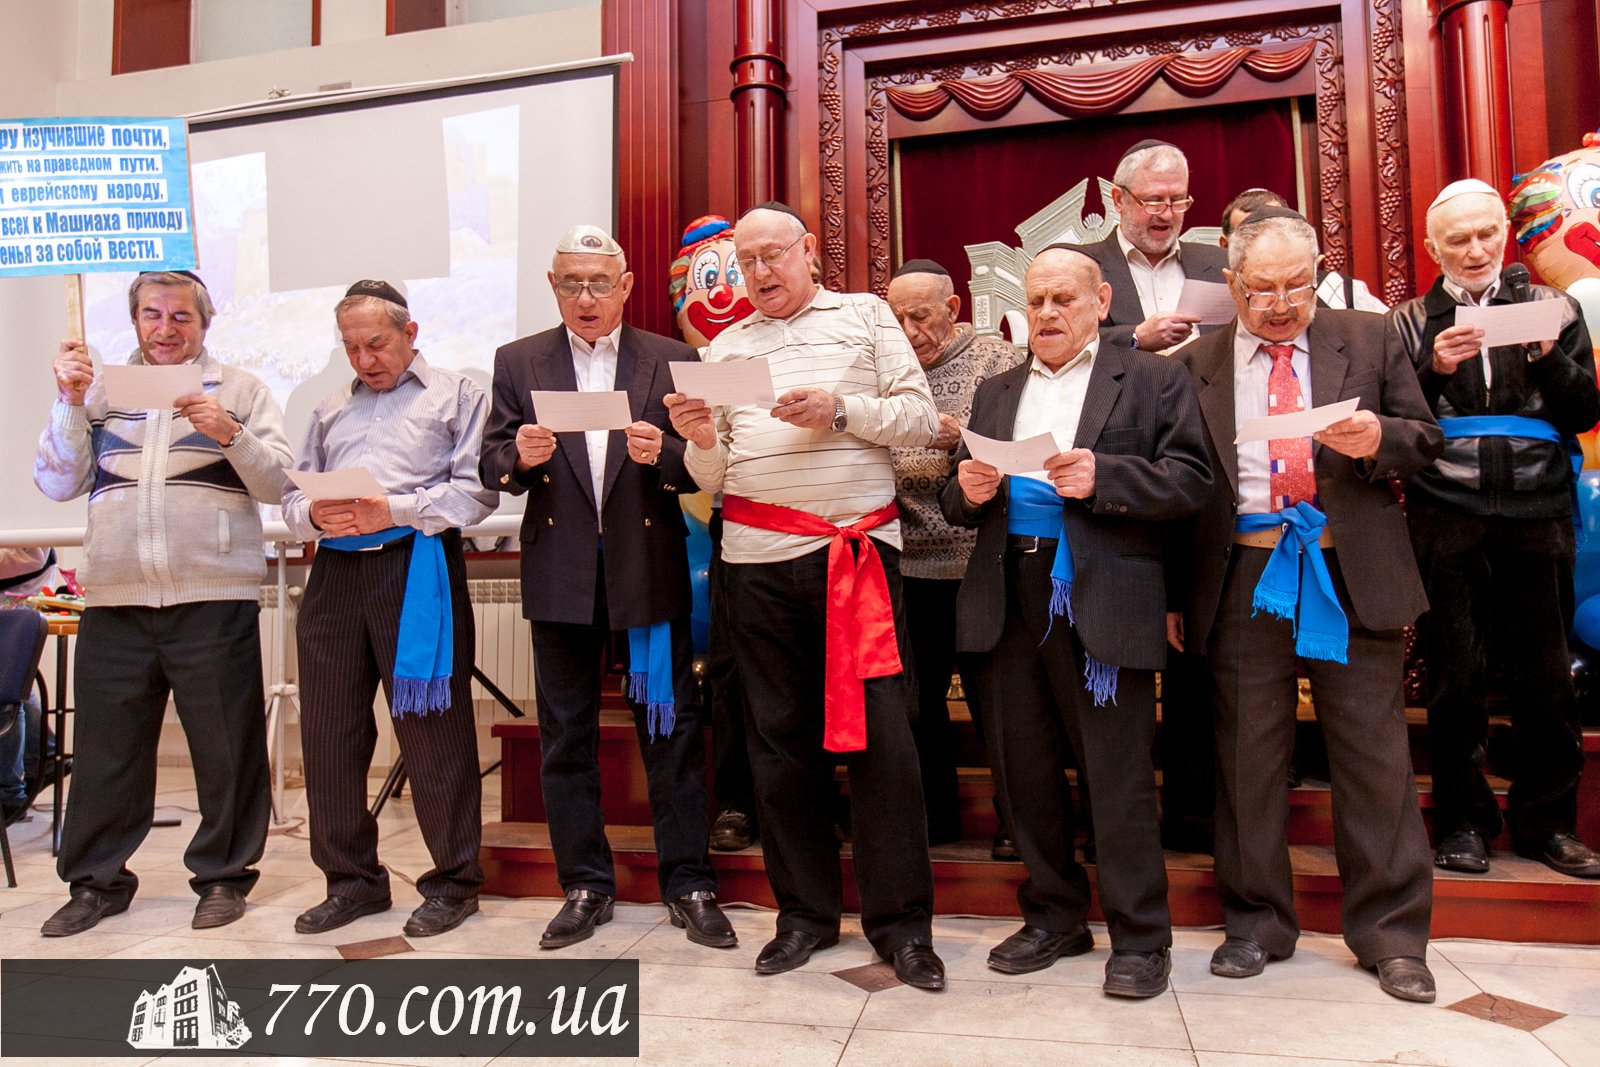 Выступление мужчин клуба "Золотой век" в общинном центре Бейт-Барух Днепродзержинск